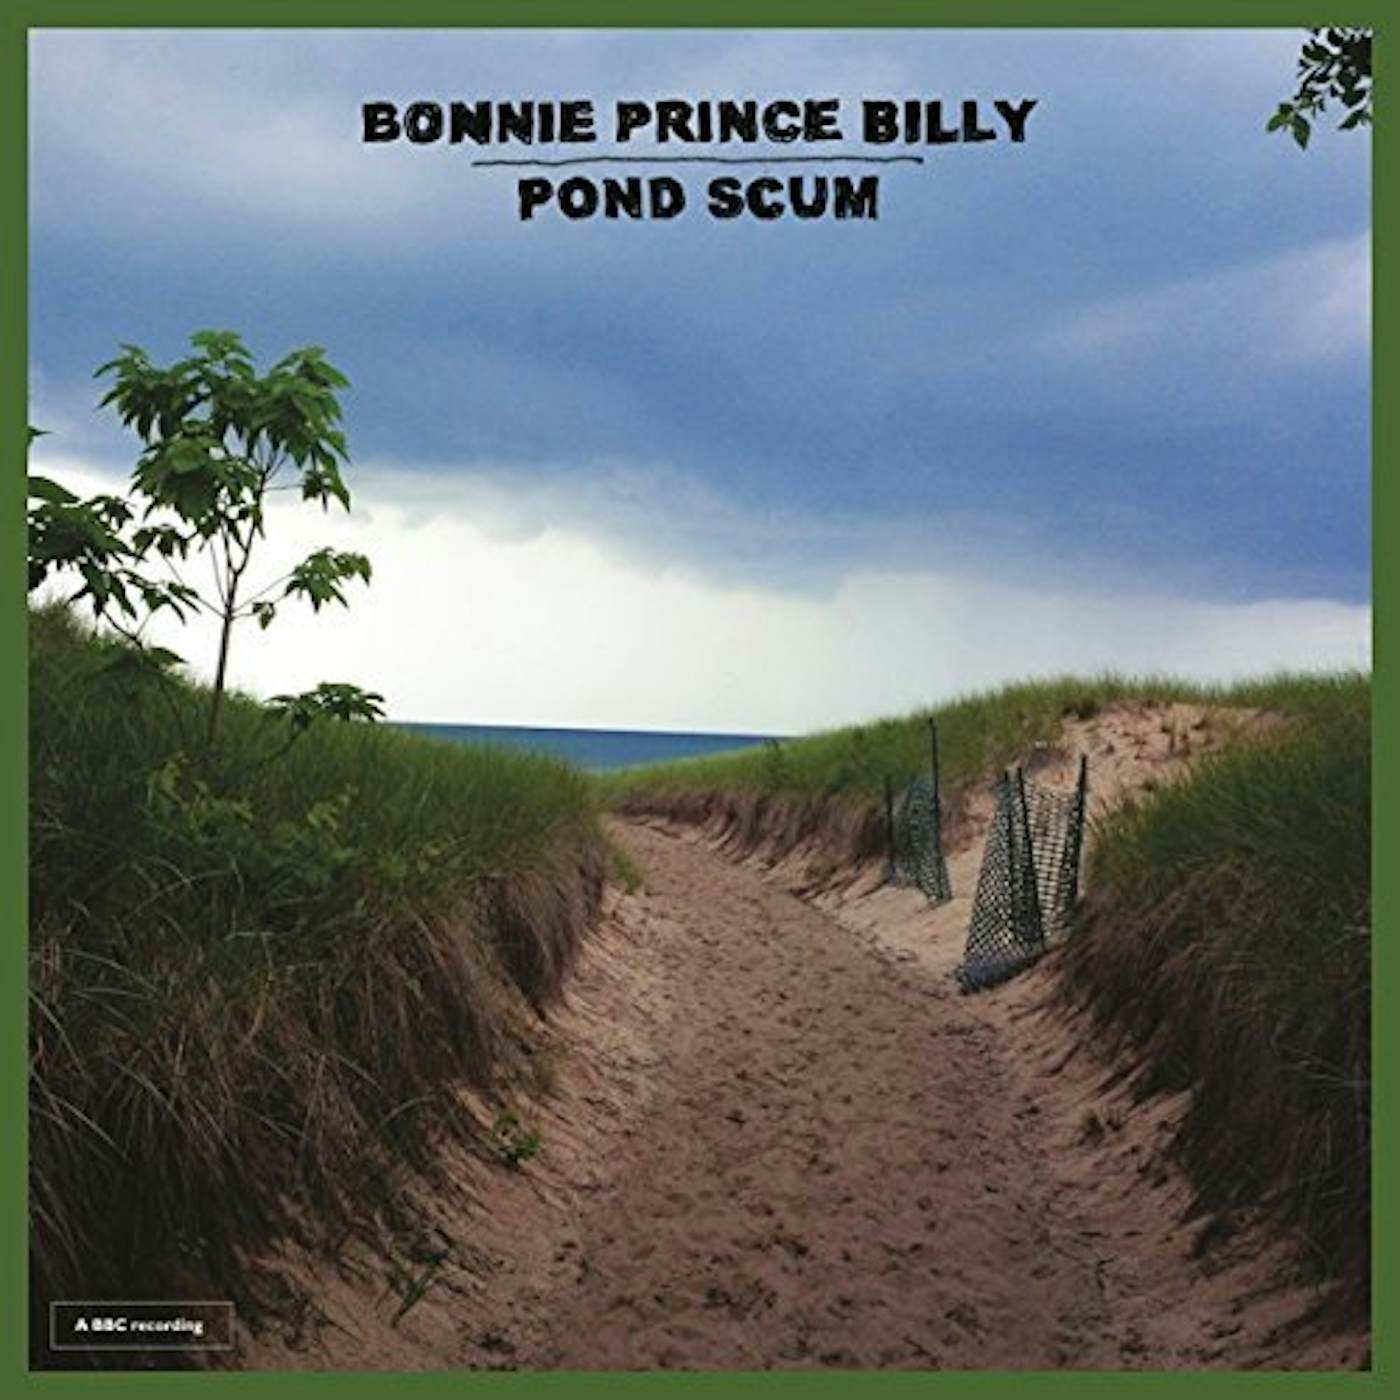 Bonnie Prince Billy Pond Scum Vinyl Record